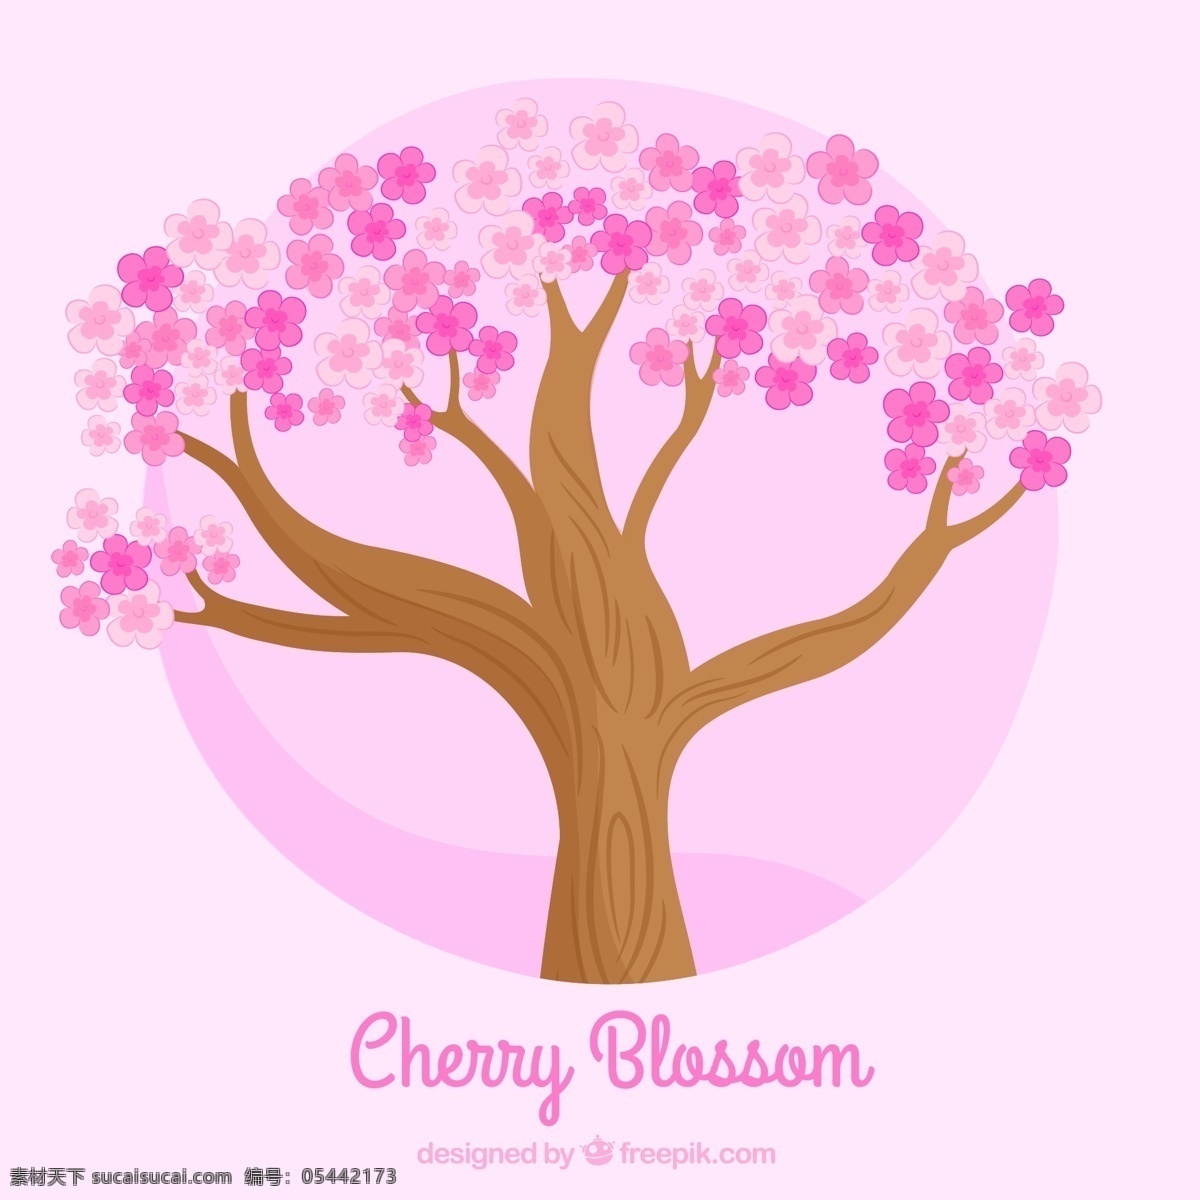 创意 桃花 桃树 粉色 元素 设计素材 创意设计 卡通 可爱 矢量素材 春